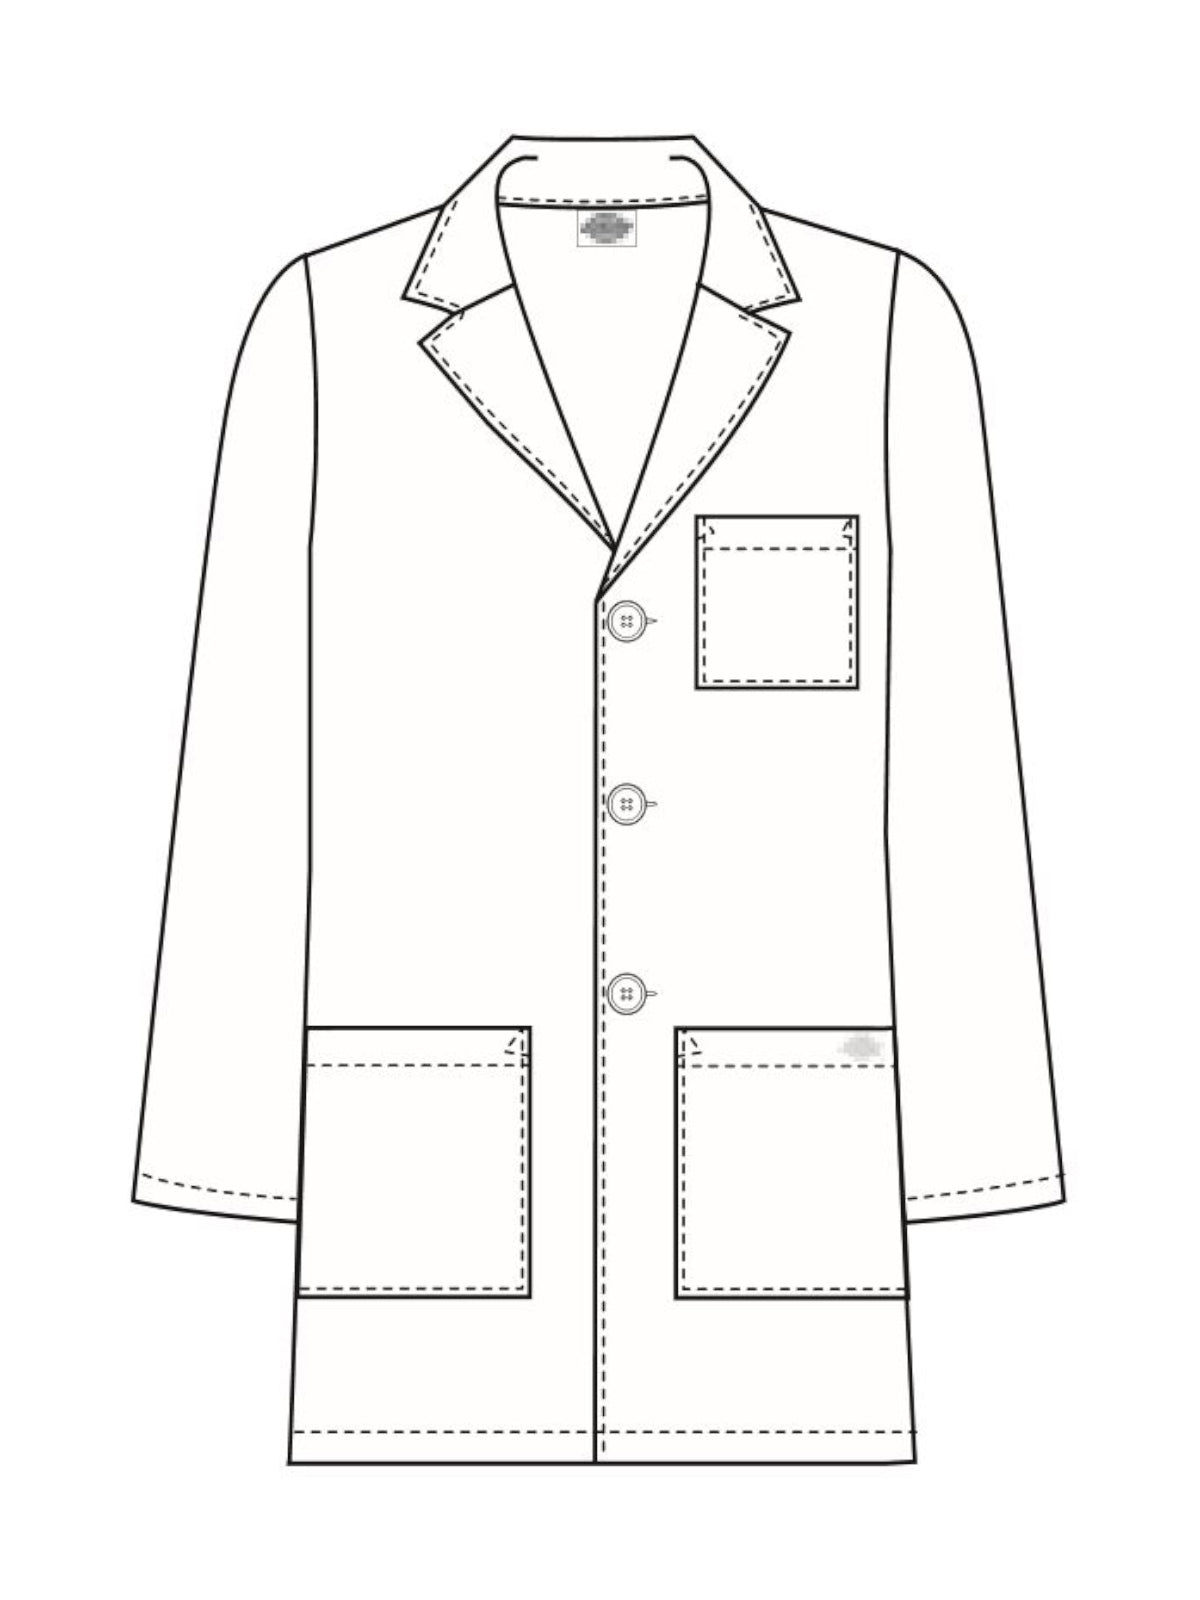 31" Men's Consultation Lab Coat - 81404 - White